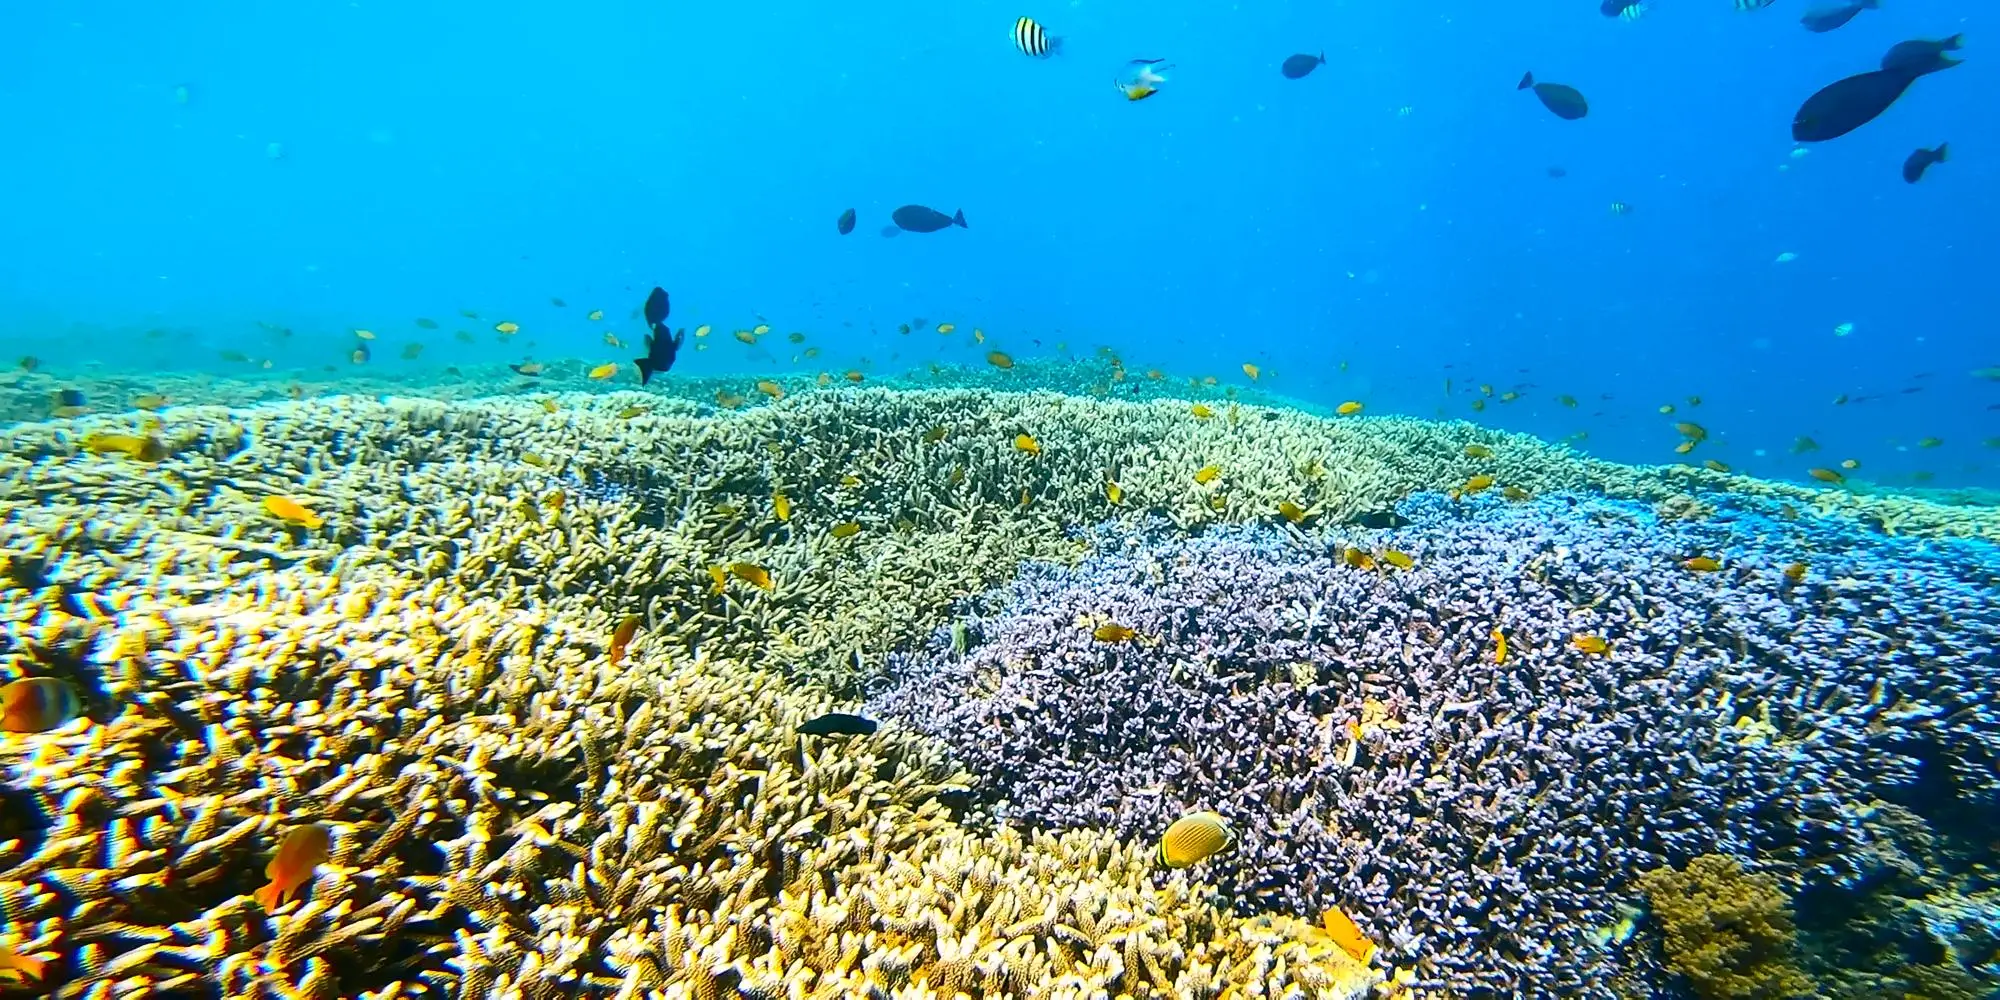 Come fare snorkeling - Snorkeling nella barriera corallina del mare